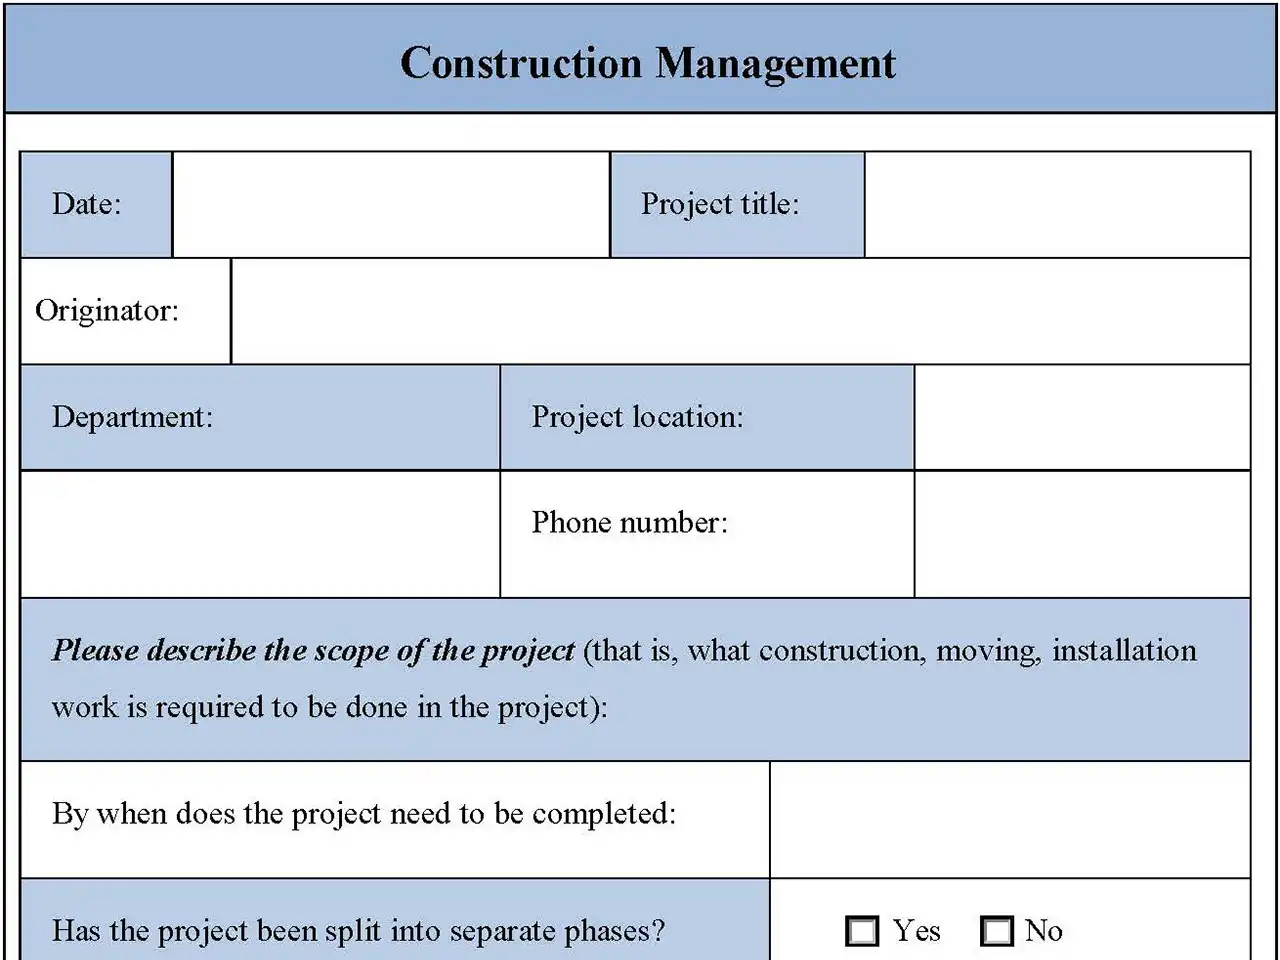 Construction Management Form